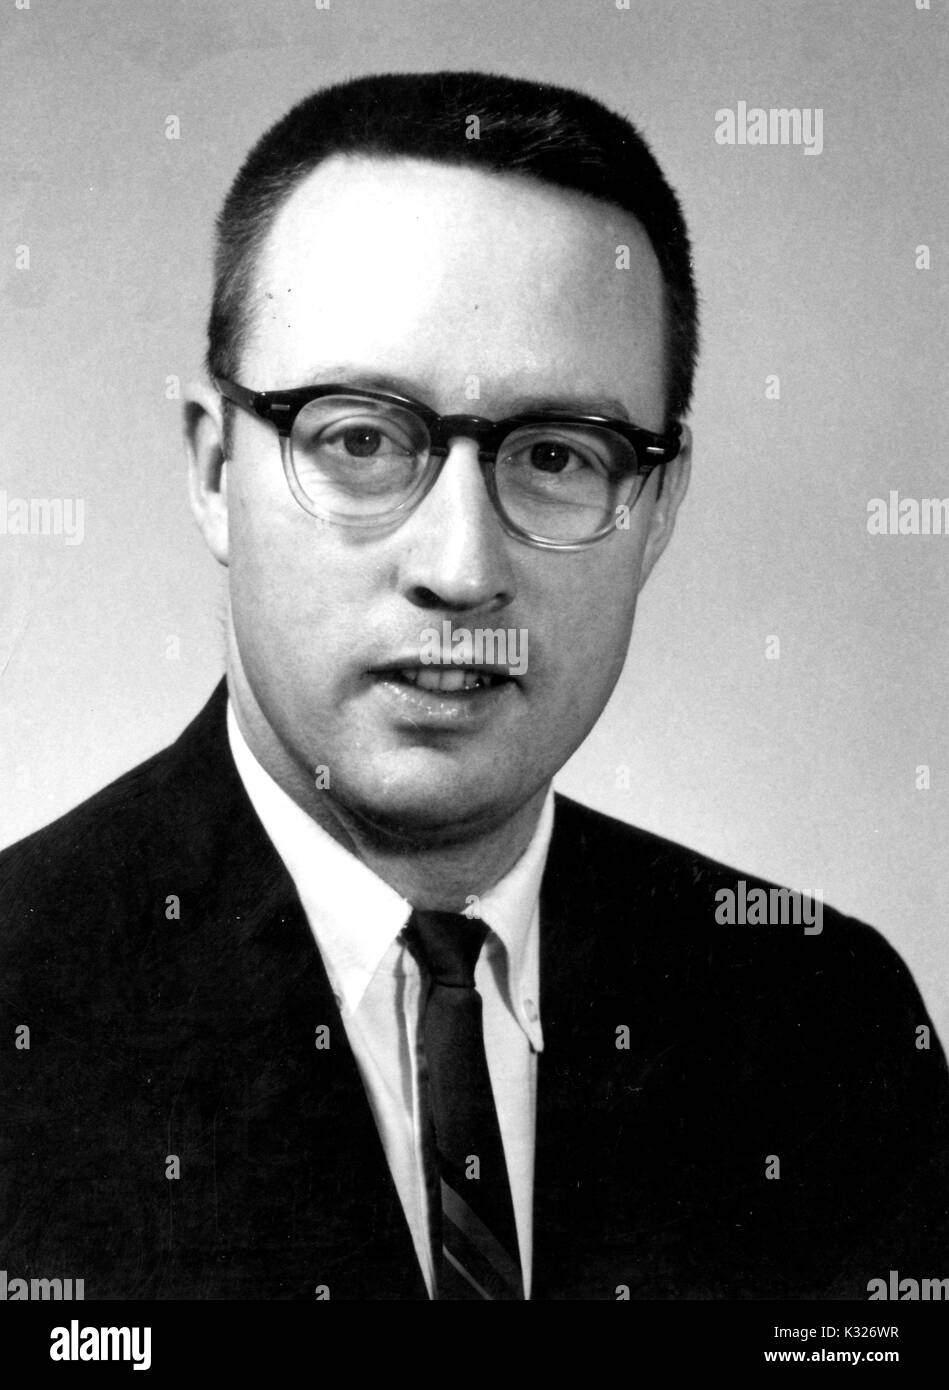 Portrait de la poitrine vers le haut le professeur de psychologie et chercheur William Edward Edmonston, Jr, 1960. Banque D'Images